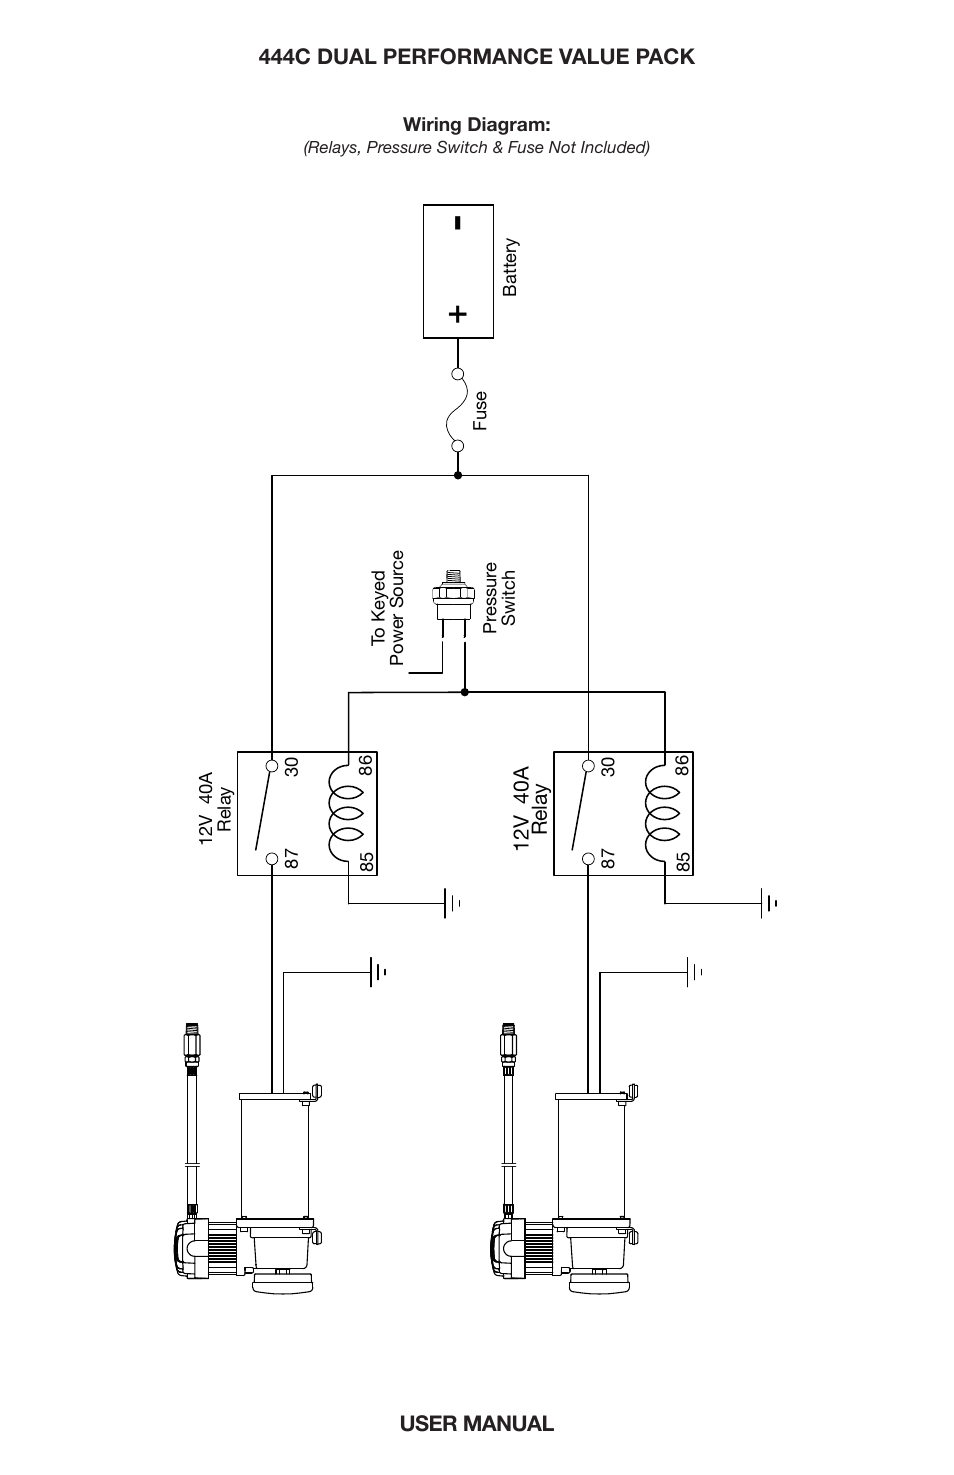 viair wiring diagram new wiring diagramviair wiring diagram wiring diagram expert viair 444c wiring diagram viair